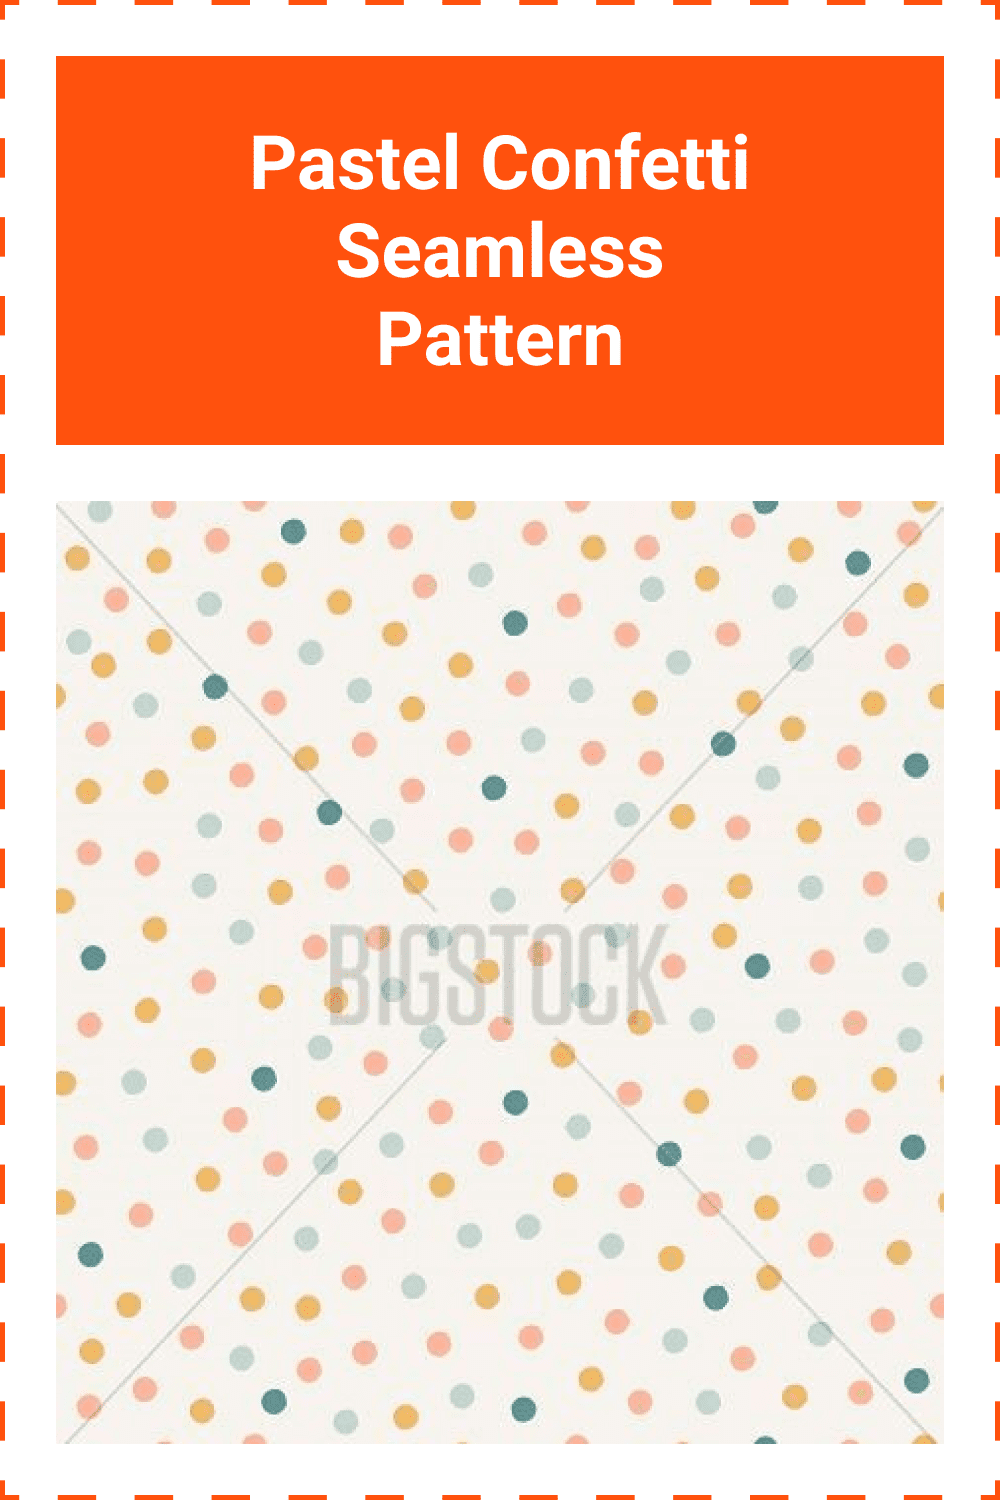 Pastel confetti seamless pattern.